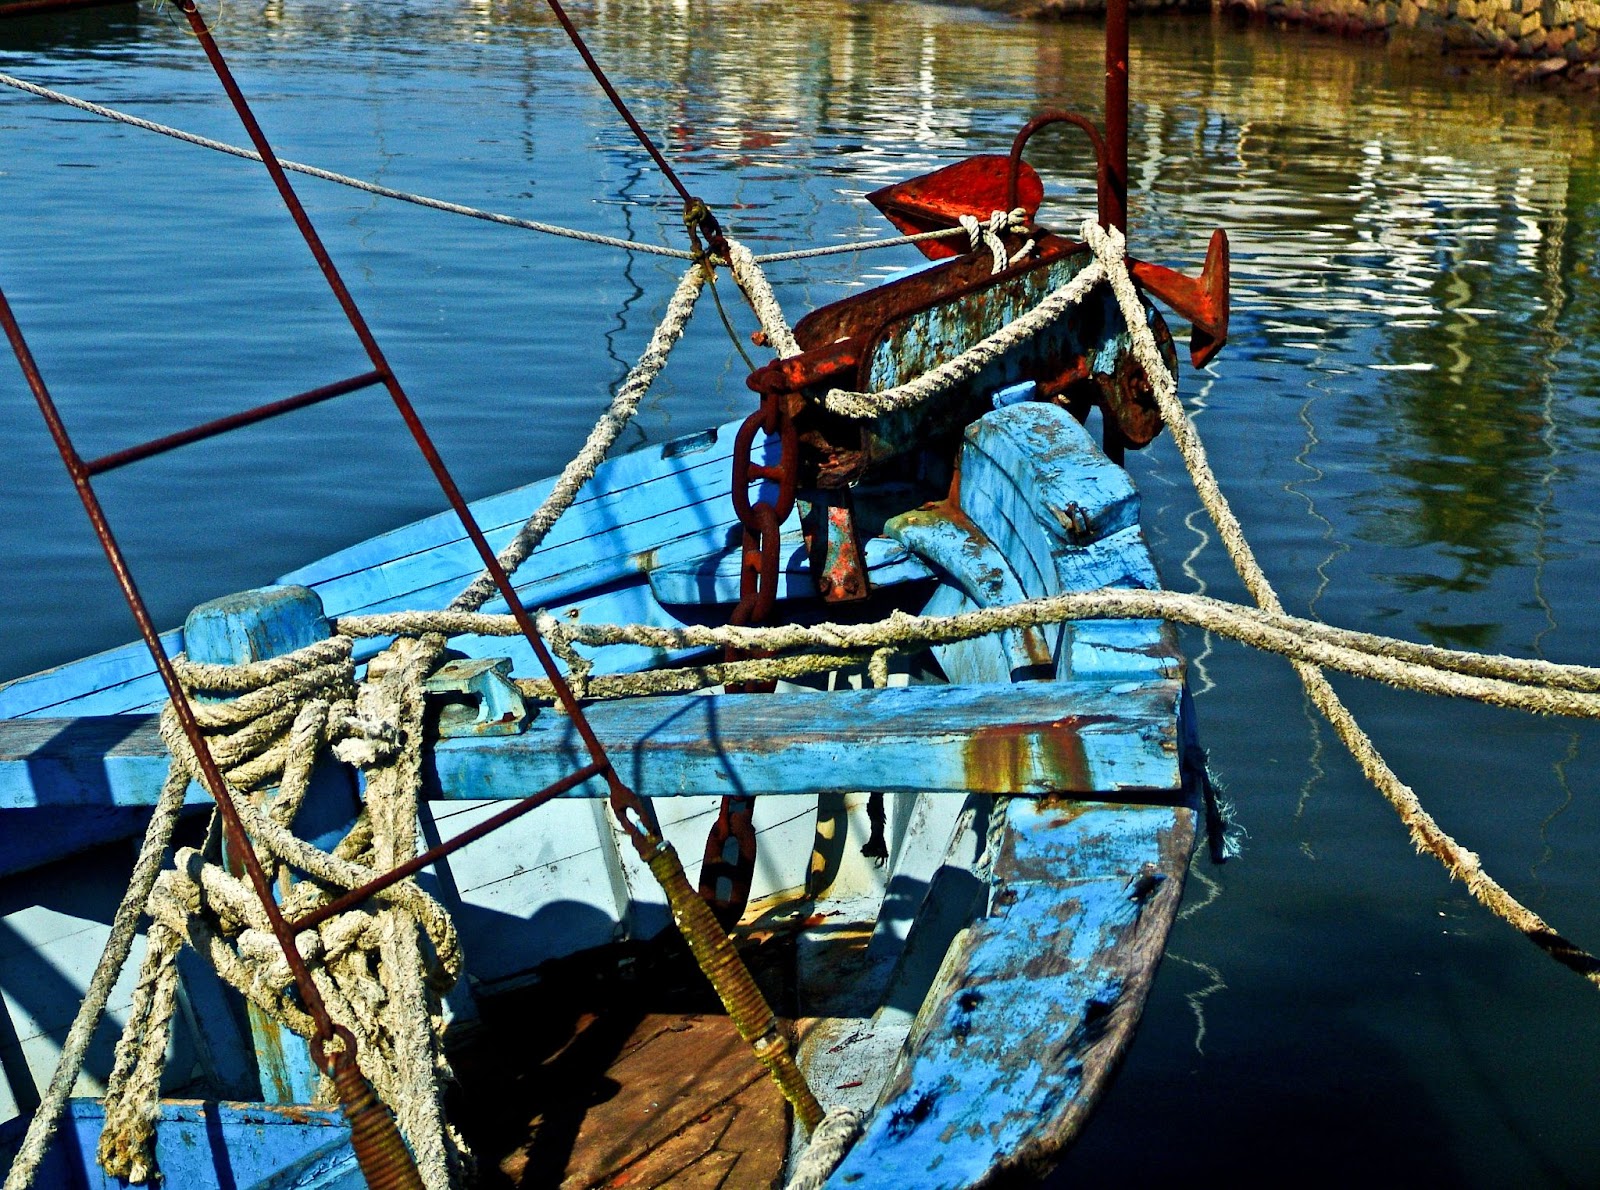 Tradicional canoa caiçara, uma pequena embarcação feita de madeira e pintada em azul e branco. Ela está vazia e flutua em águas escuras.